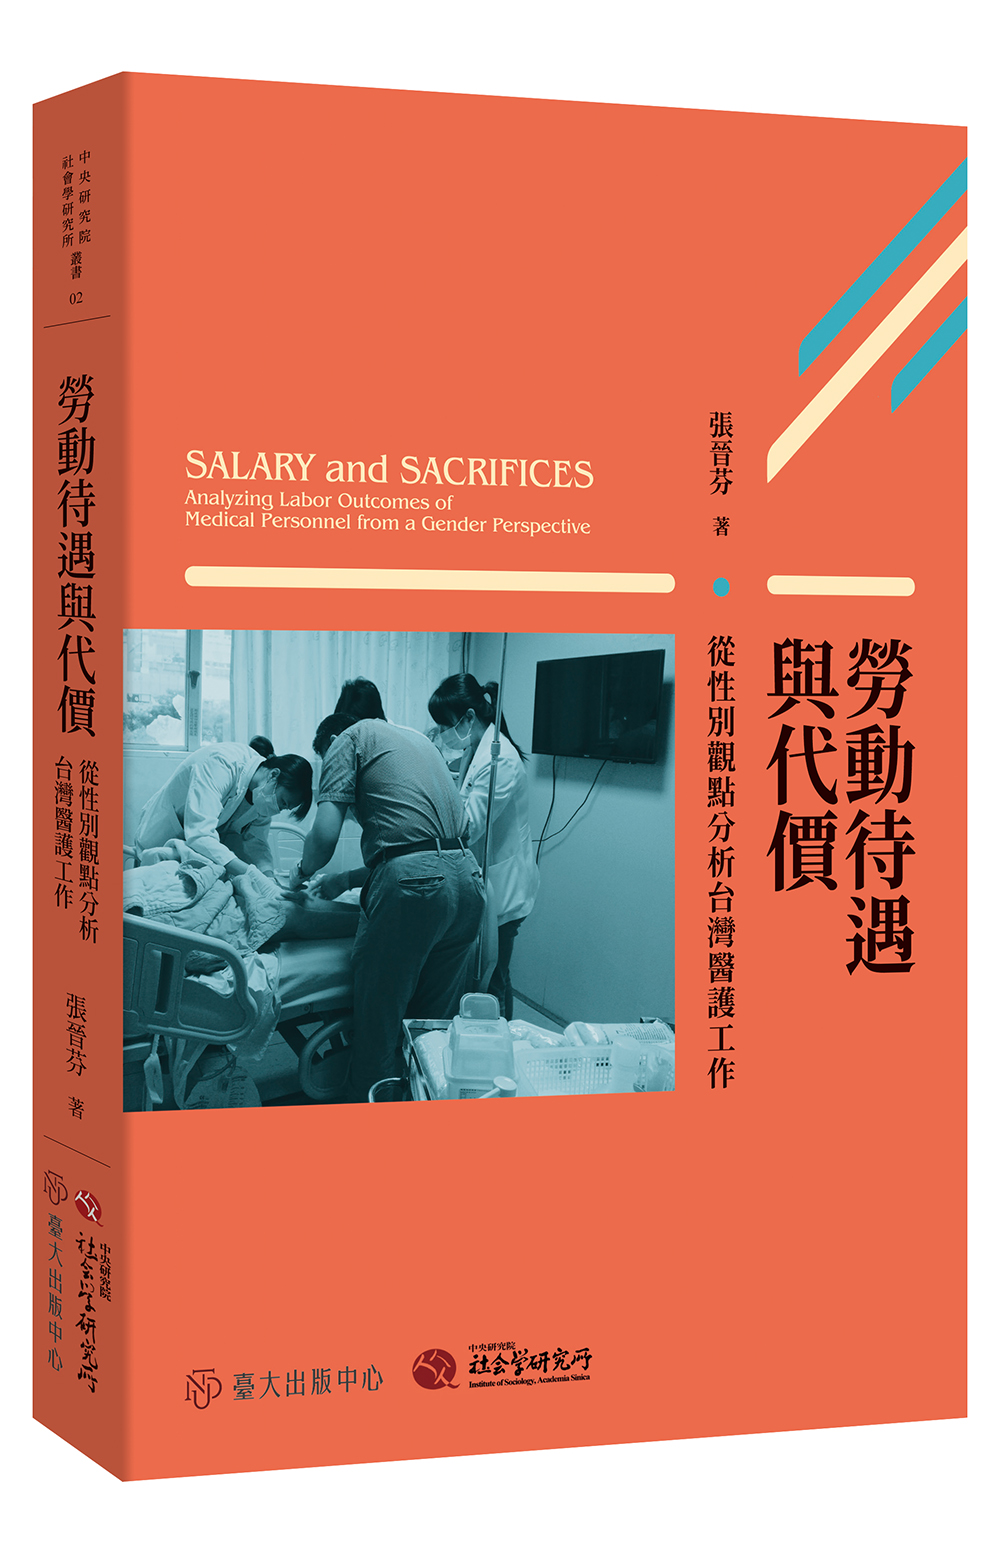 勞動待遇與代價──從性別觀點分析台灣醫護工作